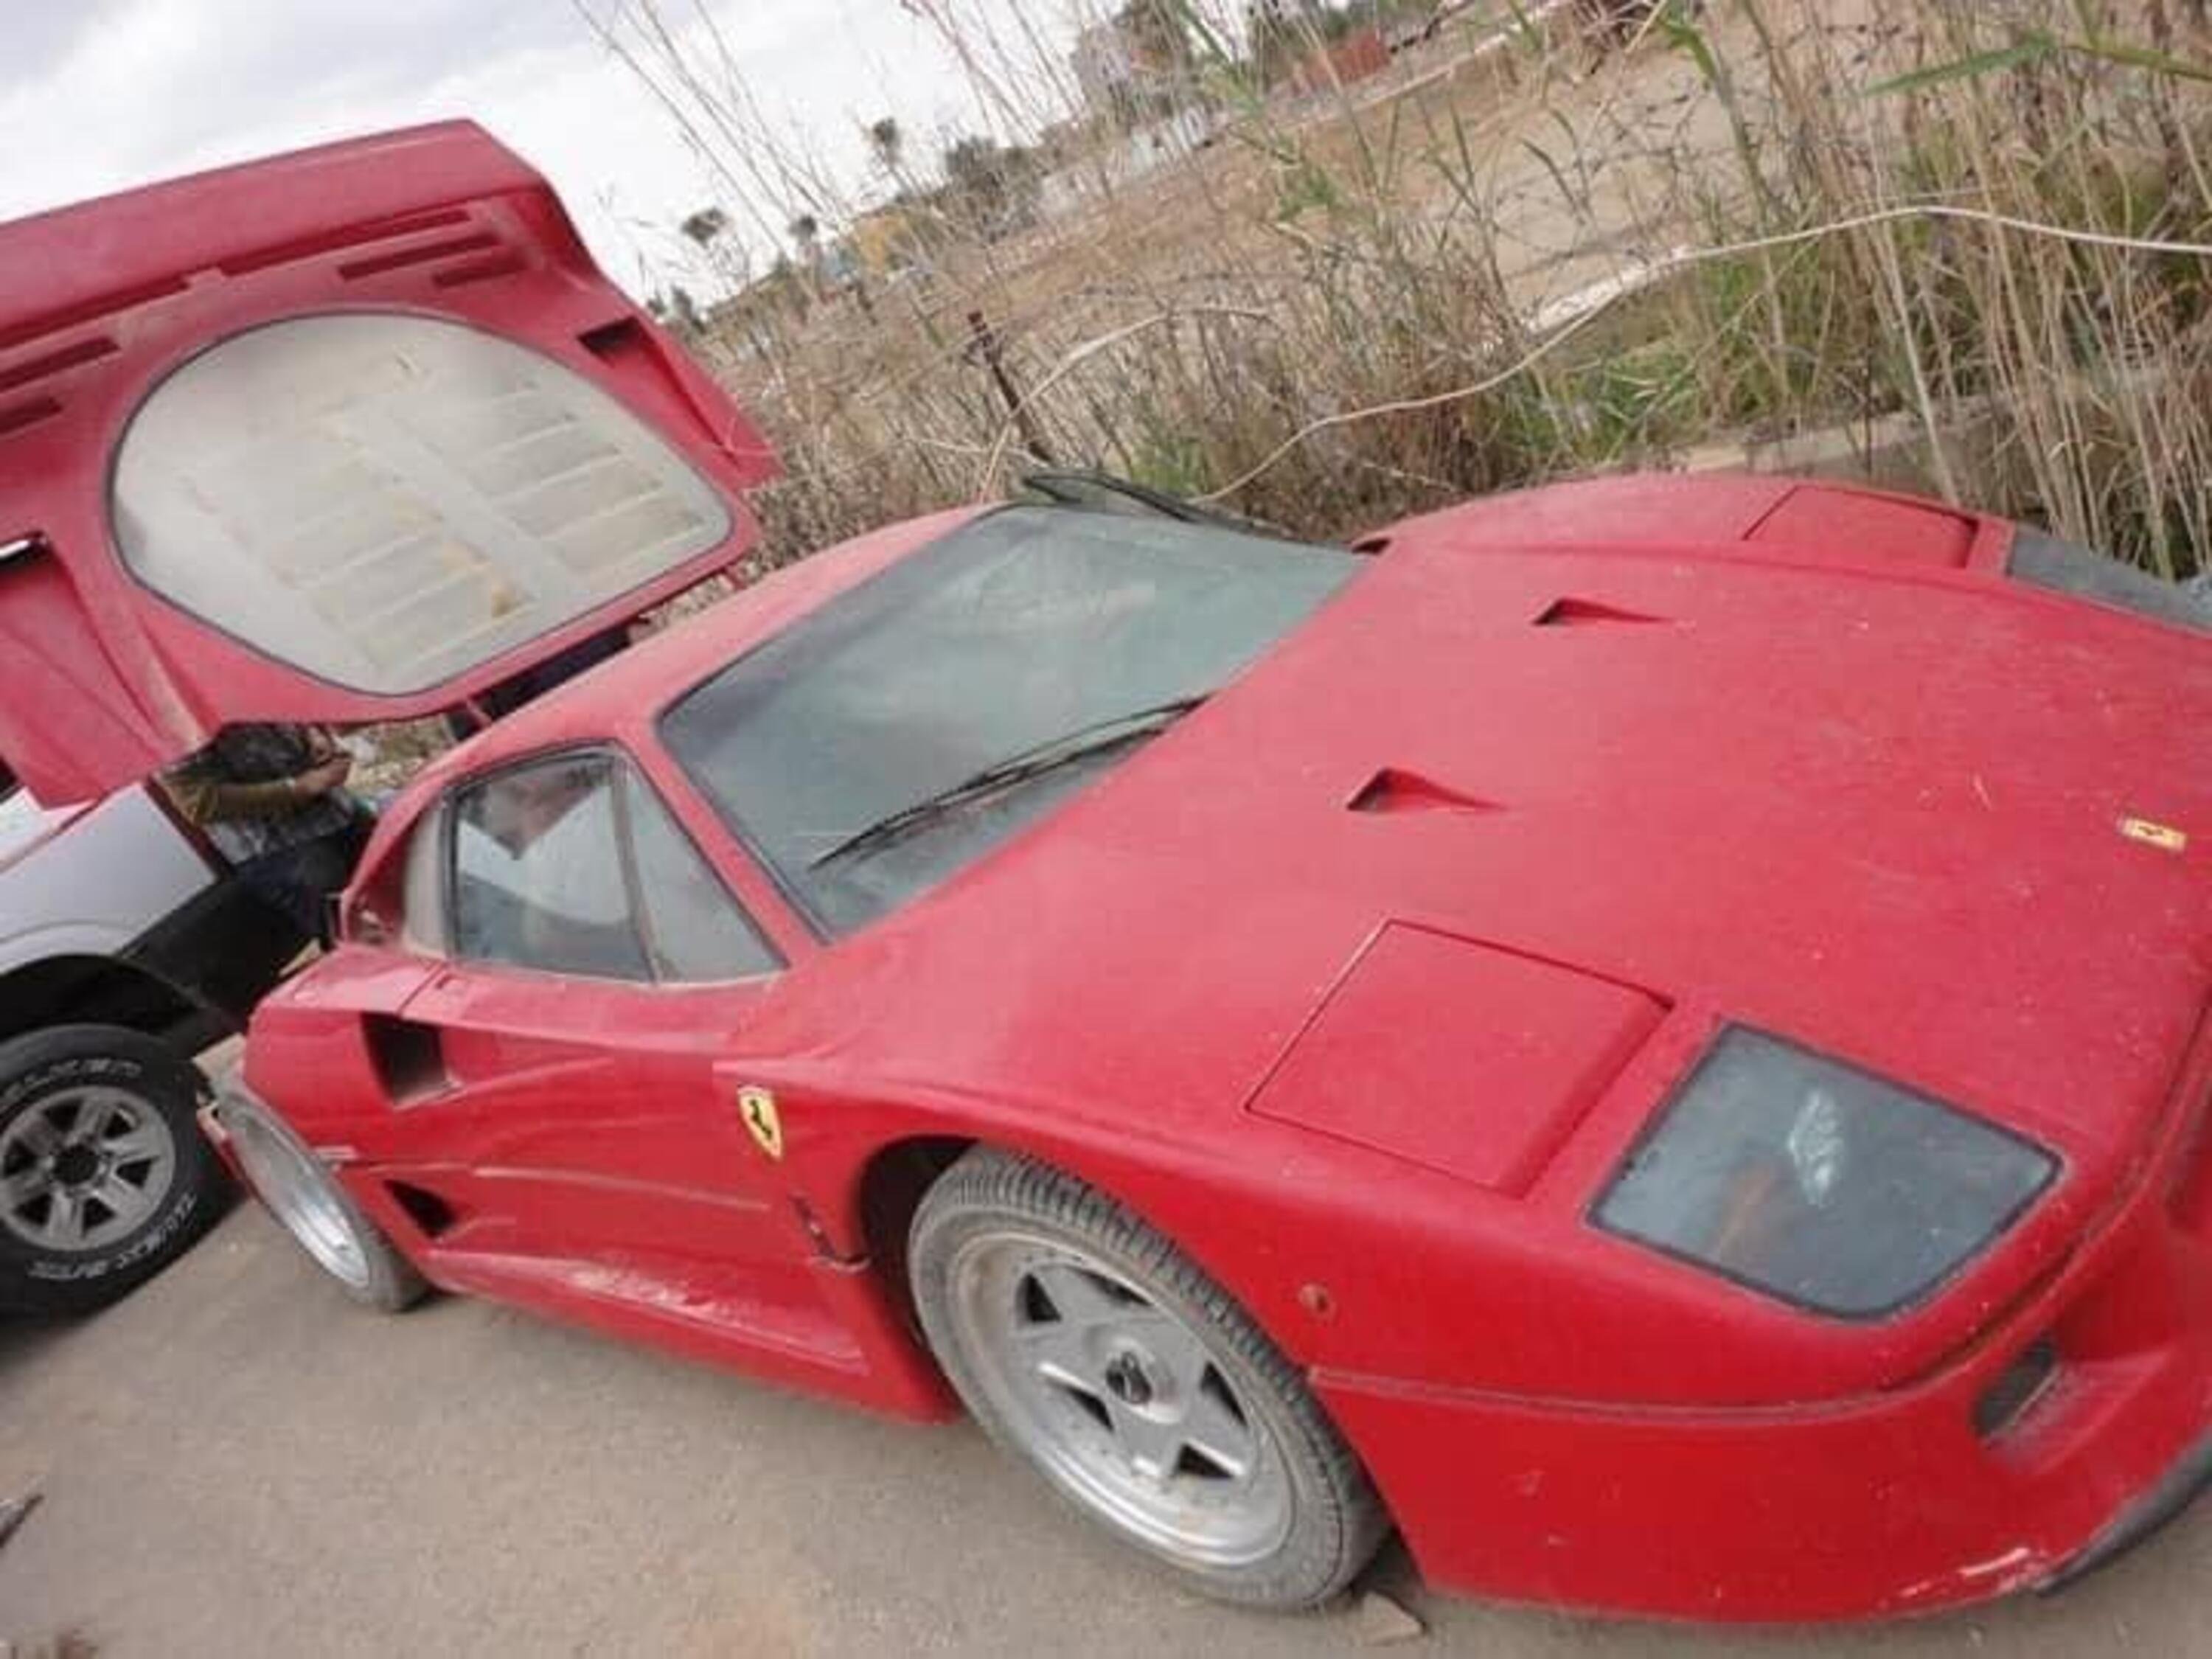 Ferrari F40 abbandonata: era di Uday Hussein, figlio di Saddam